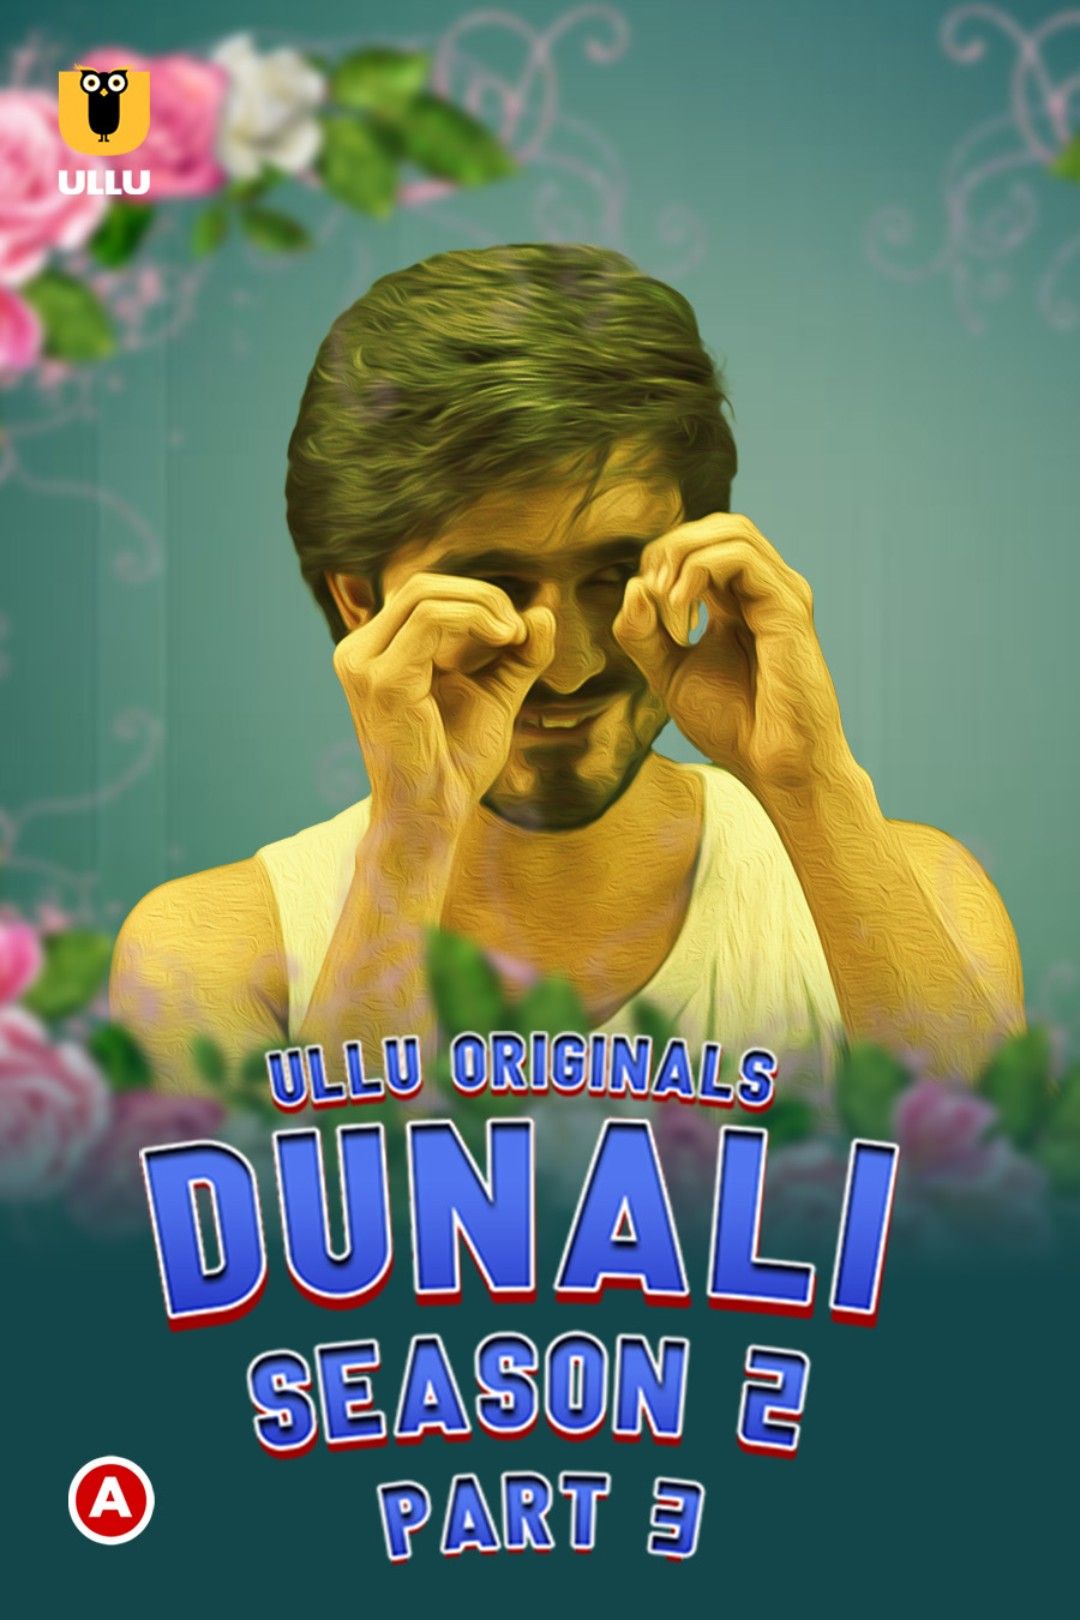 Dunali (2022) Season 2 Part 3 (ullu Originals) (2022)